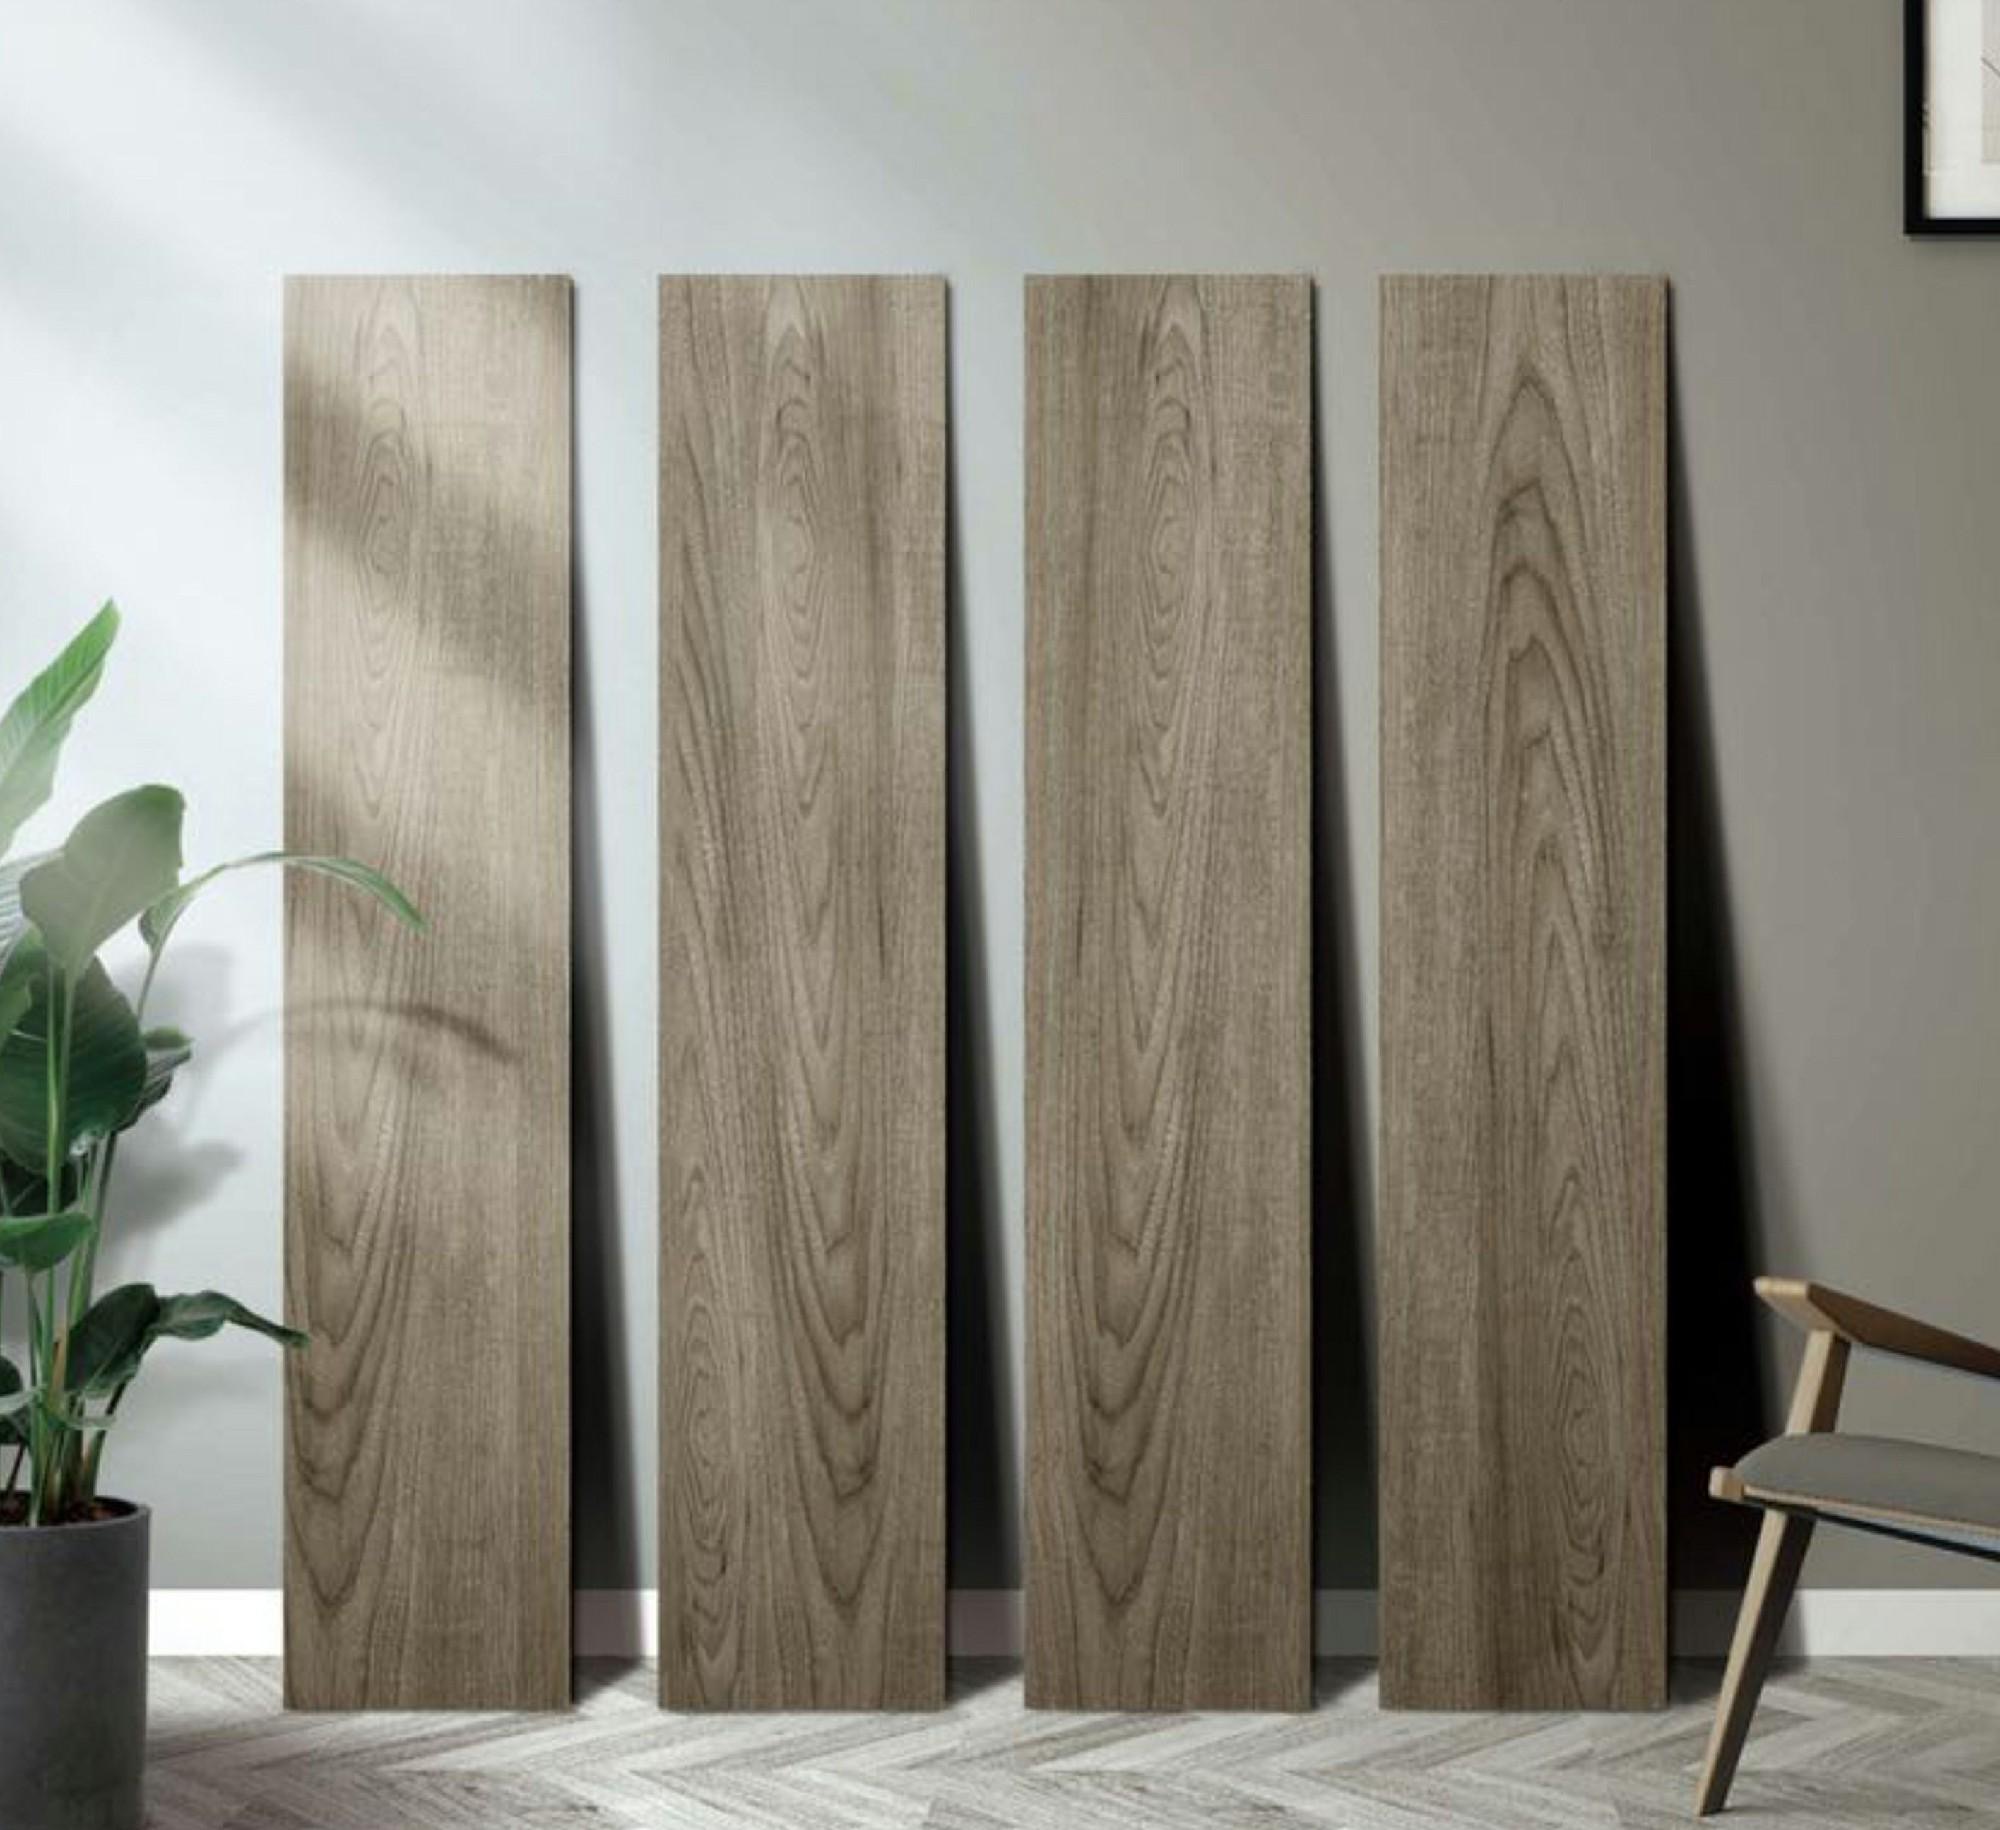 15x90cm 自然木紋磚 瓷磚 仿古磚 - SE00007SC